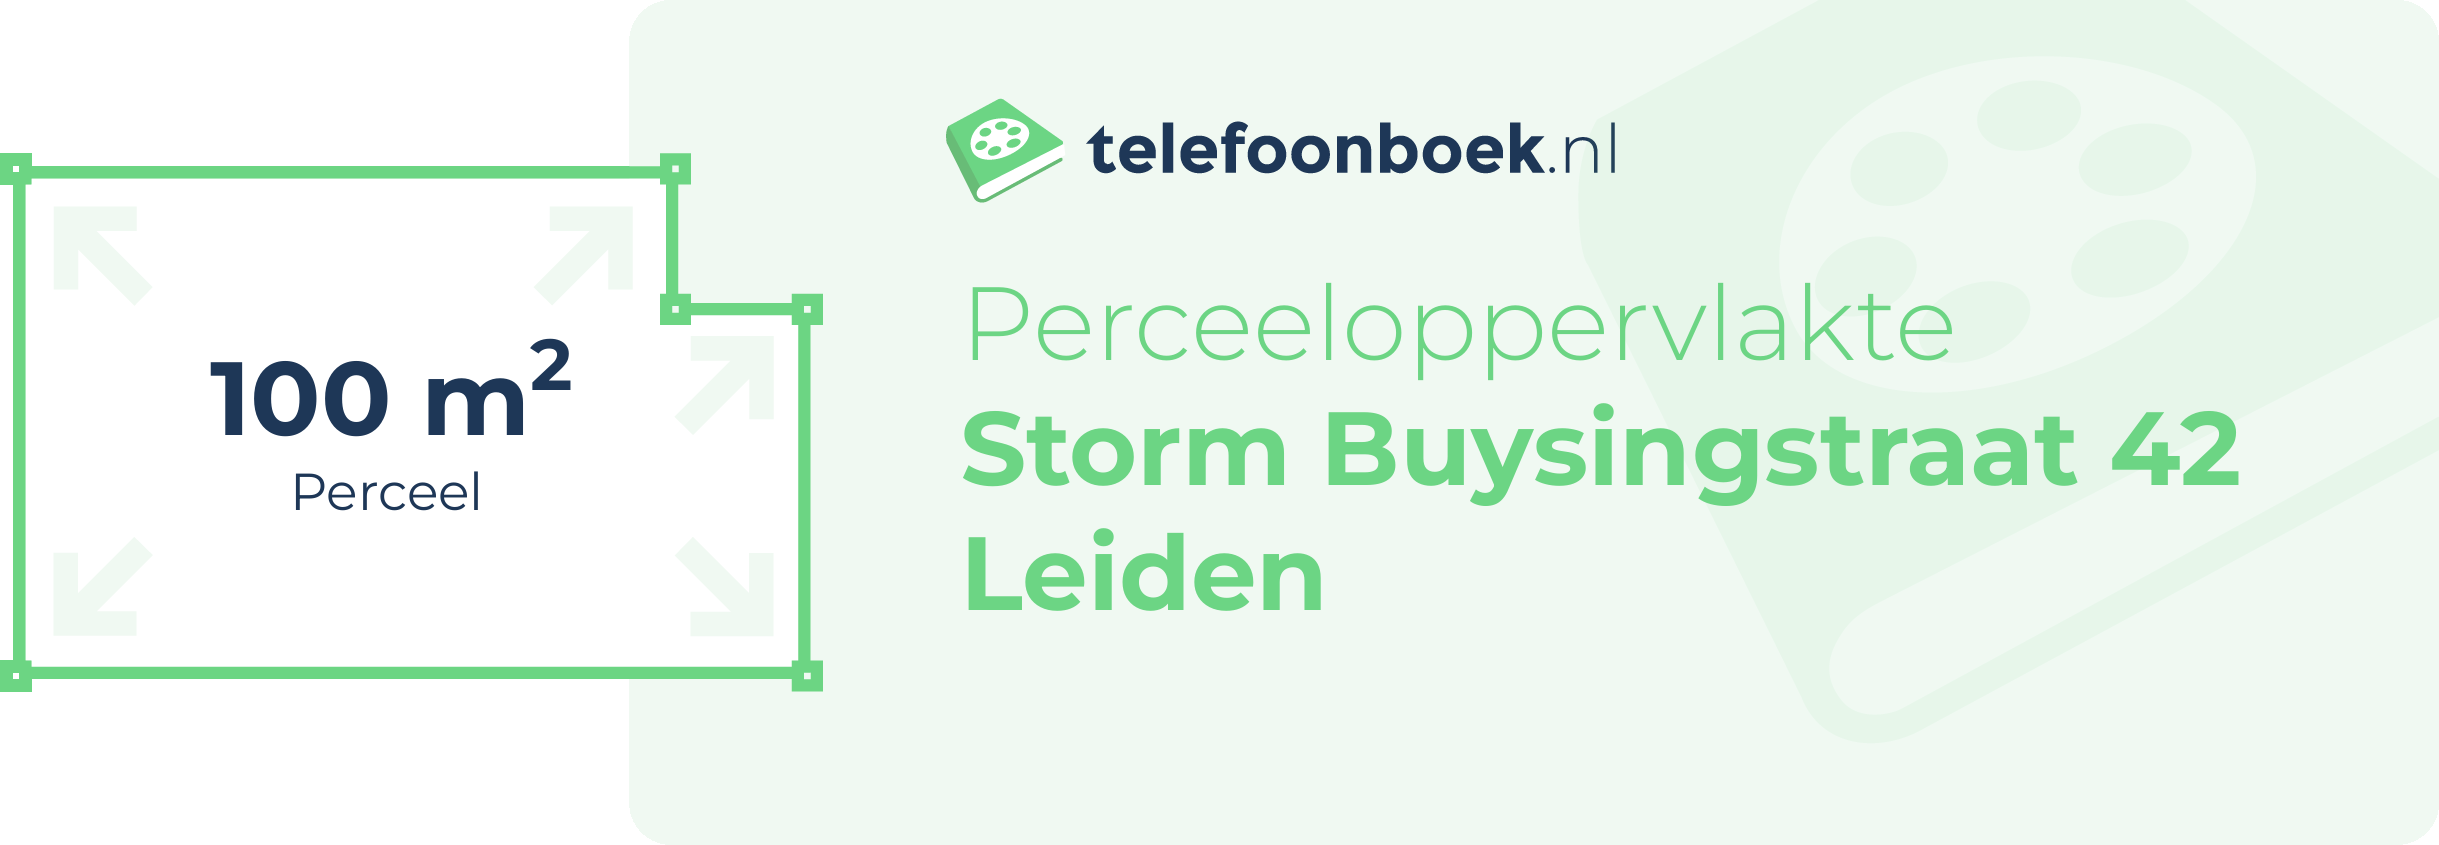 Perceeloppervlakte Storm Buysingstraat 42 Leiden